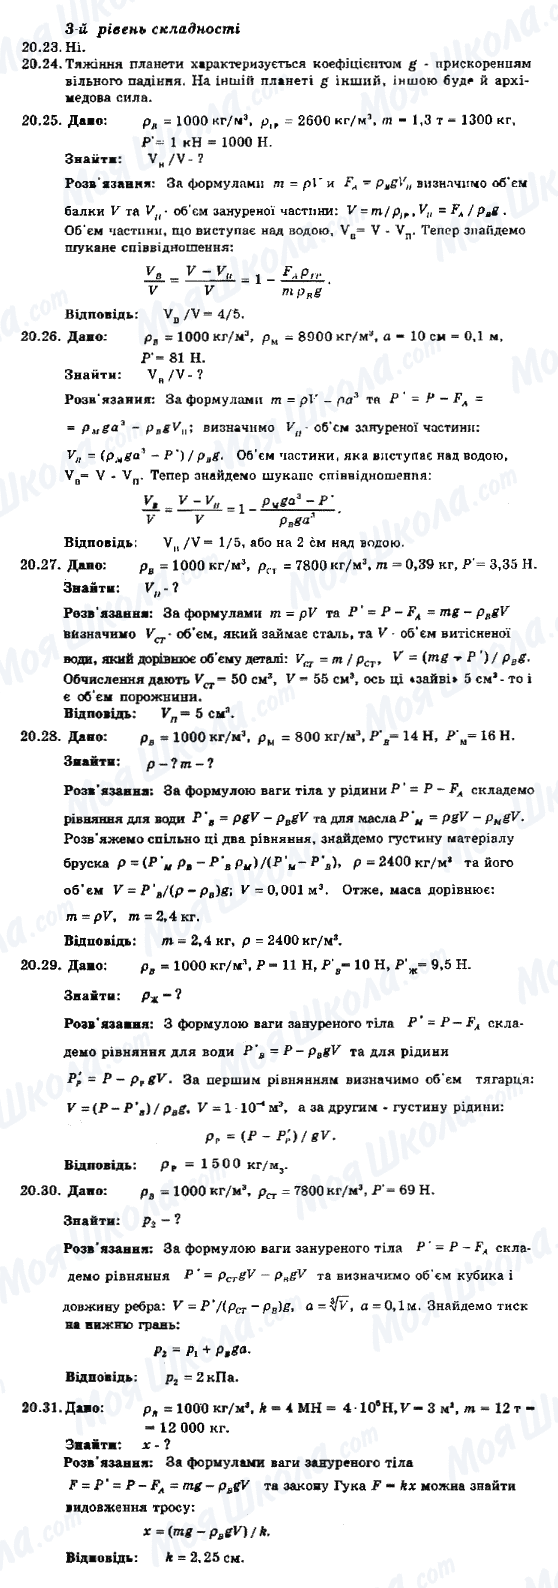 ГДЗ Физика 8 класс страница 20.23-20.31